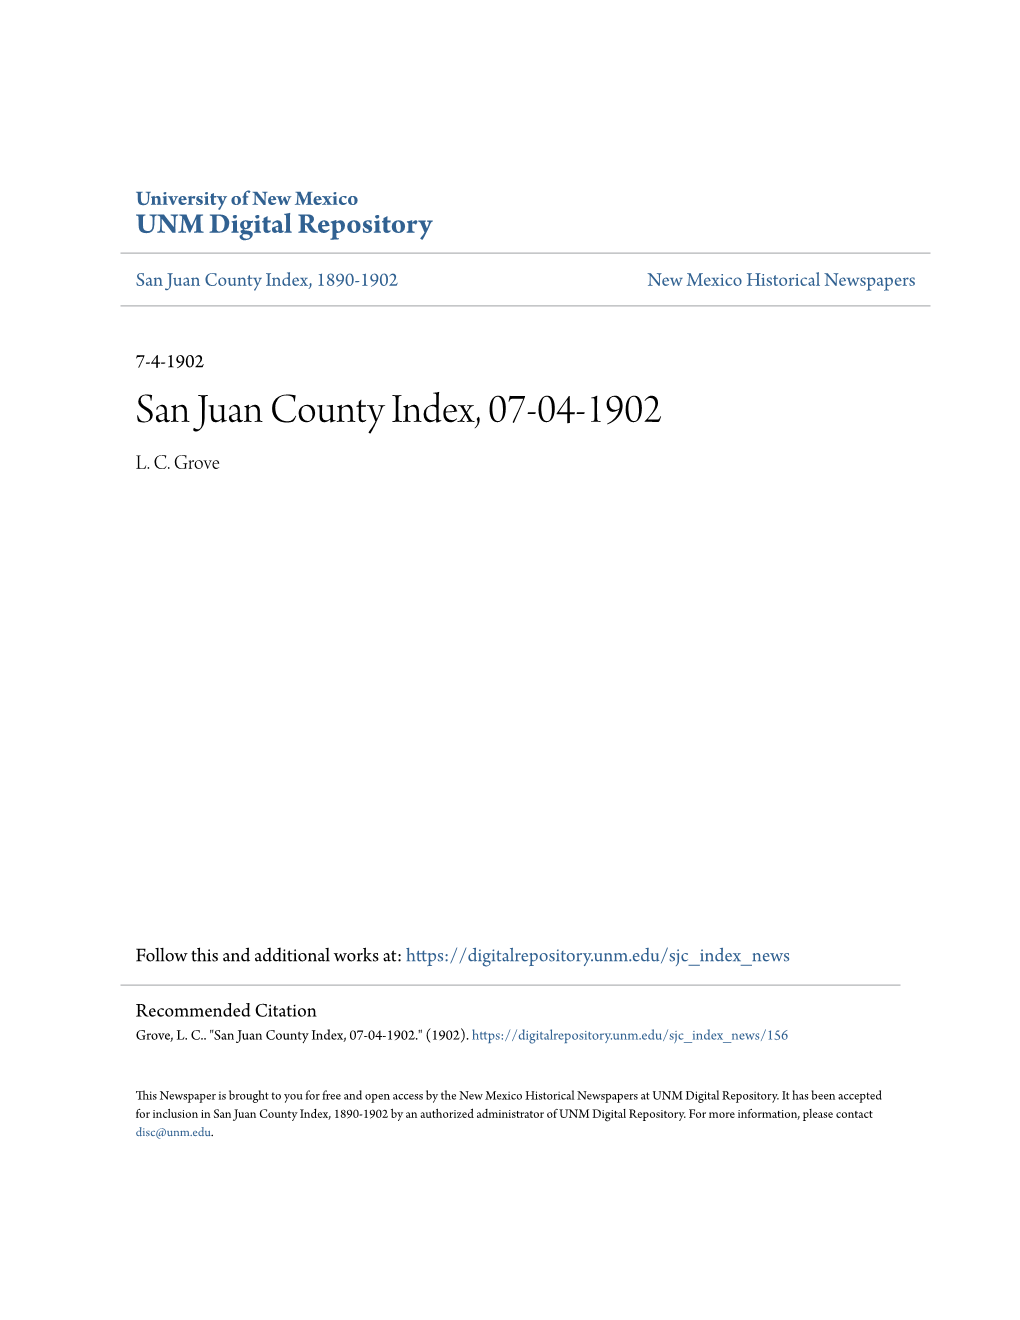 San Juan County Index, 07-04-1902 L